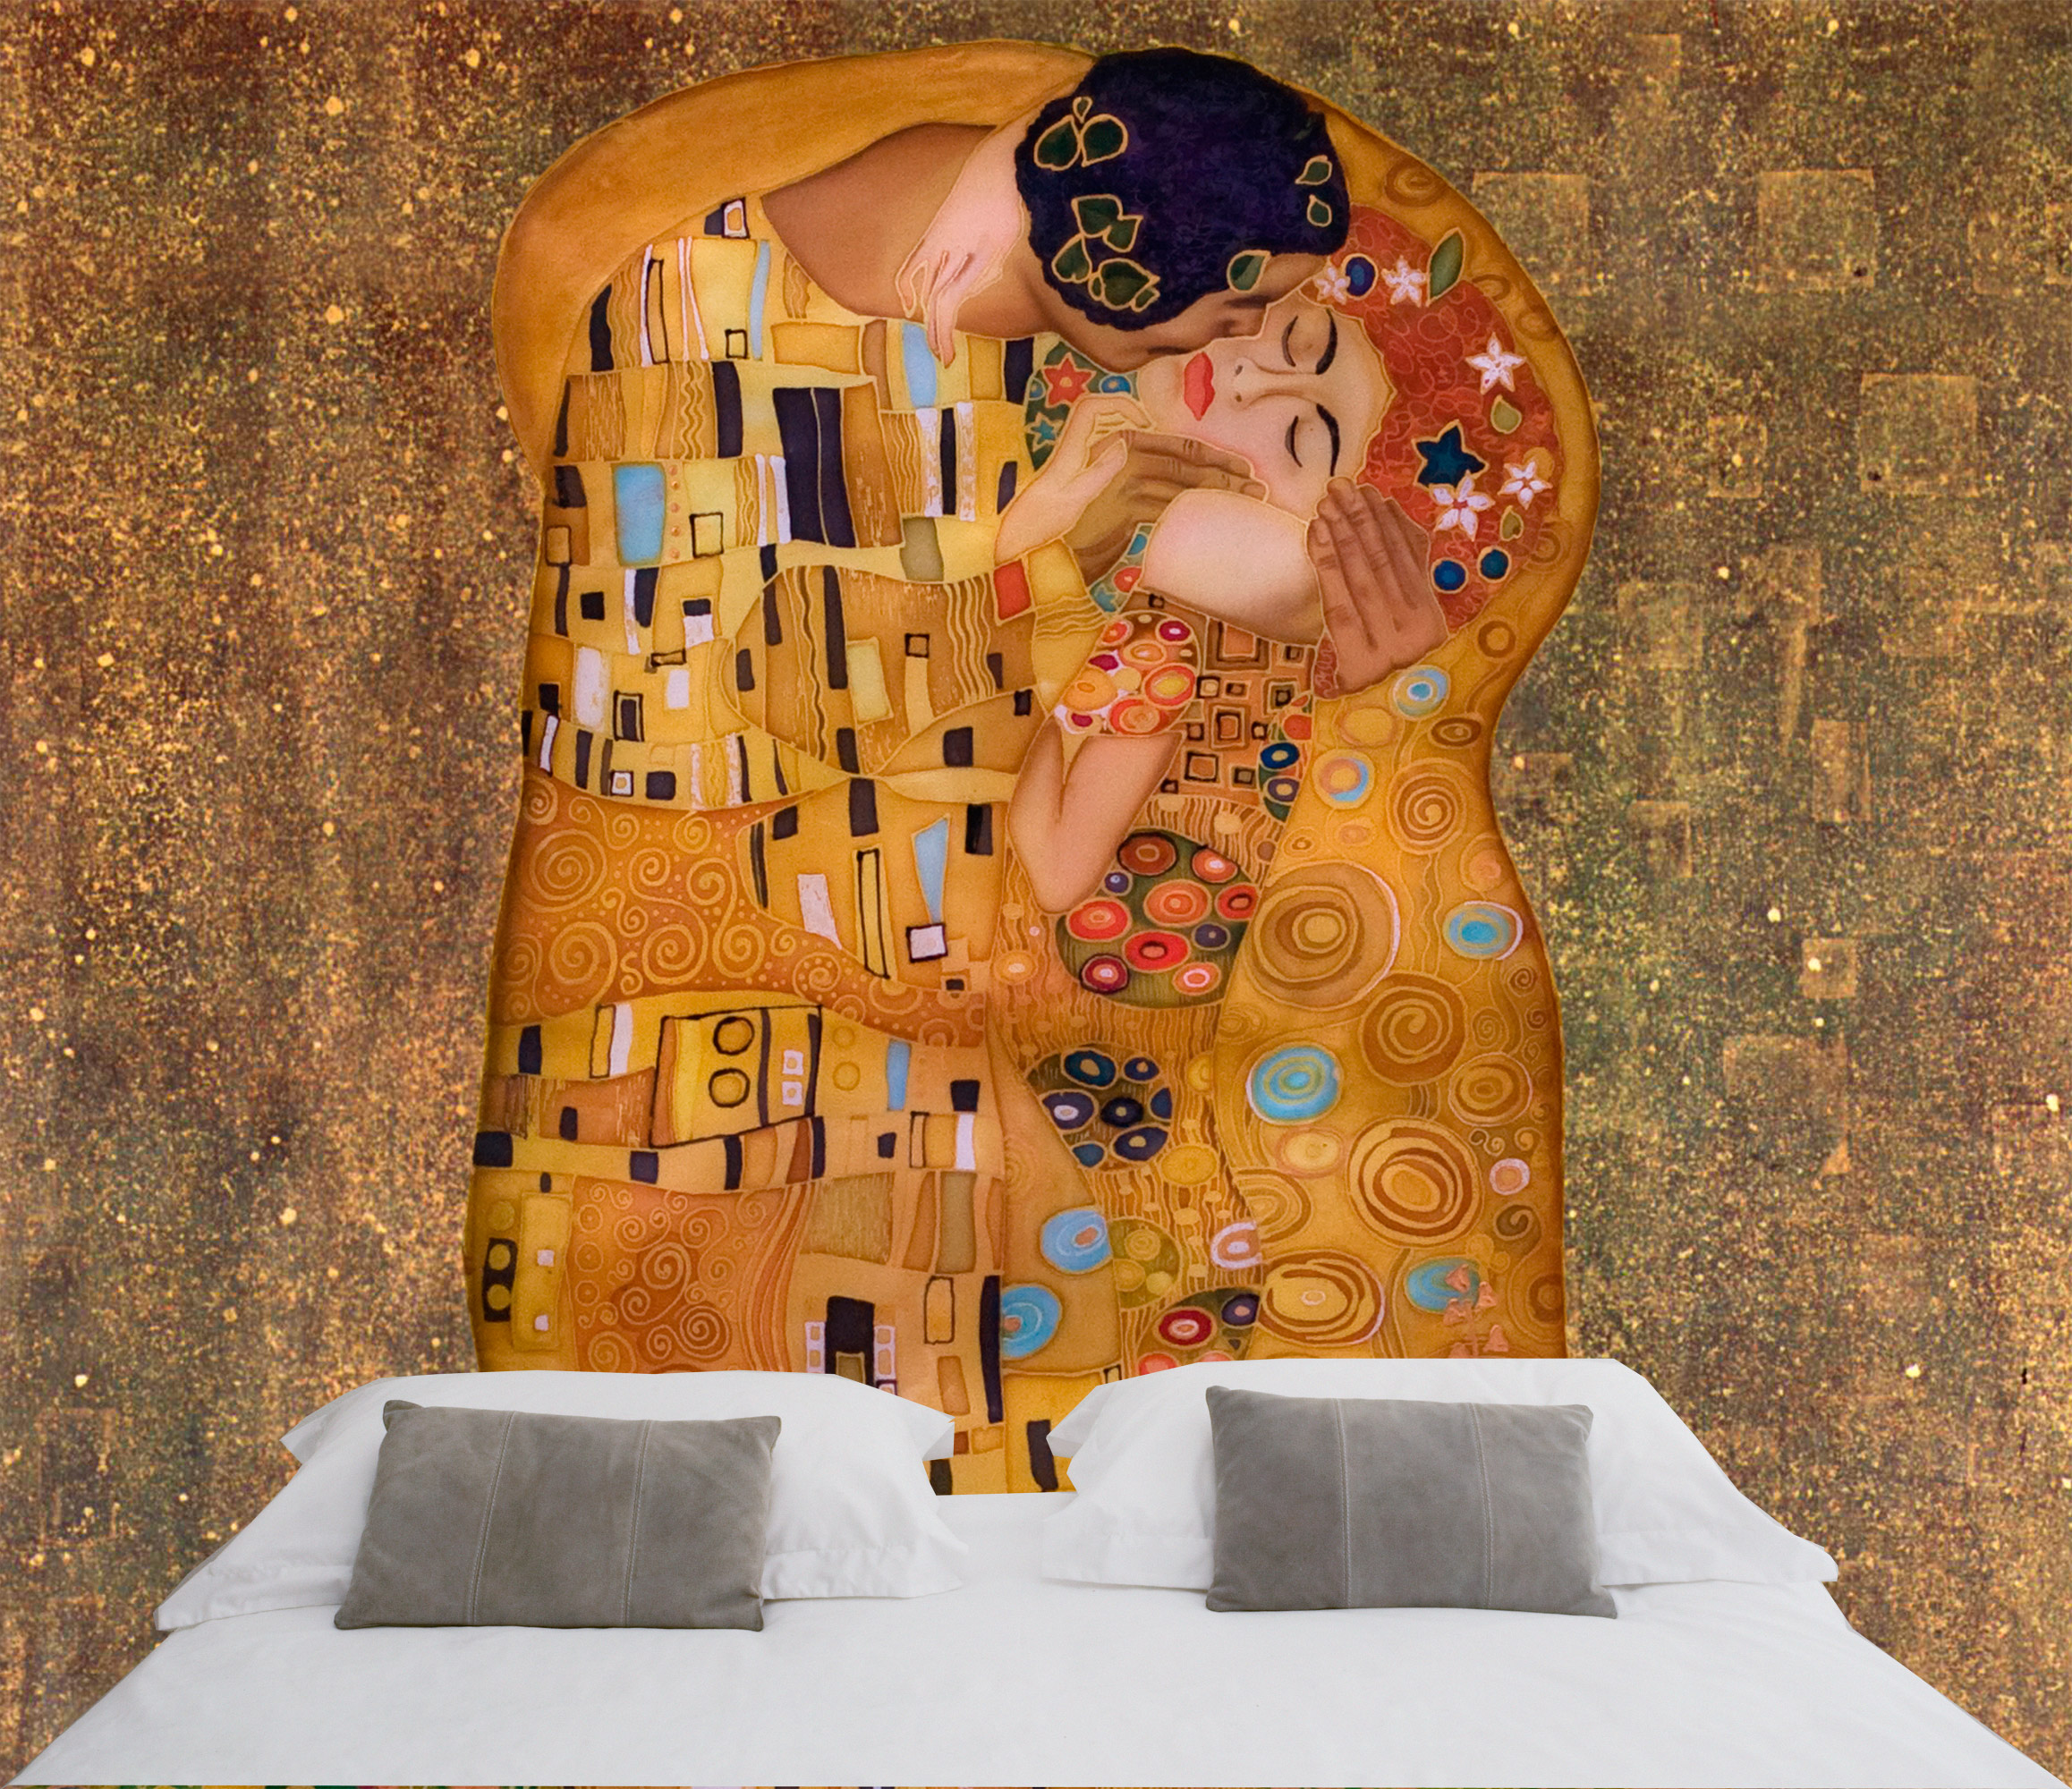 Fototapeten: Der Kuss, von Gustav Klimt